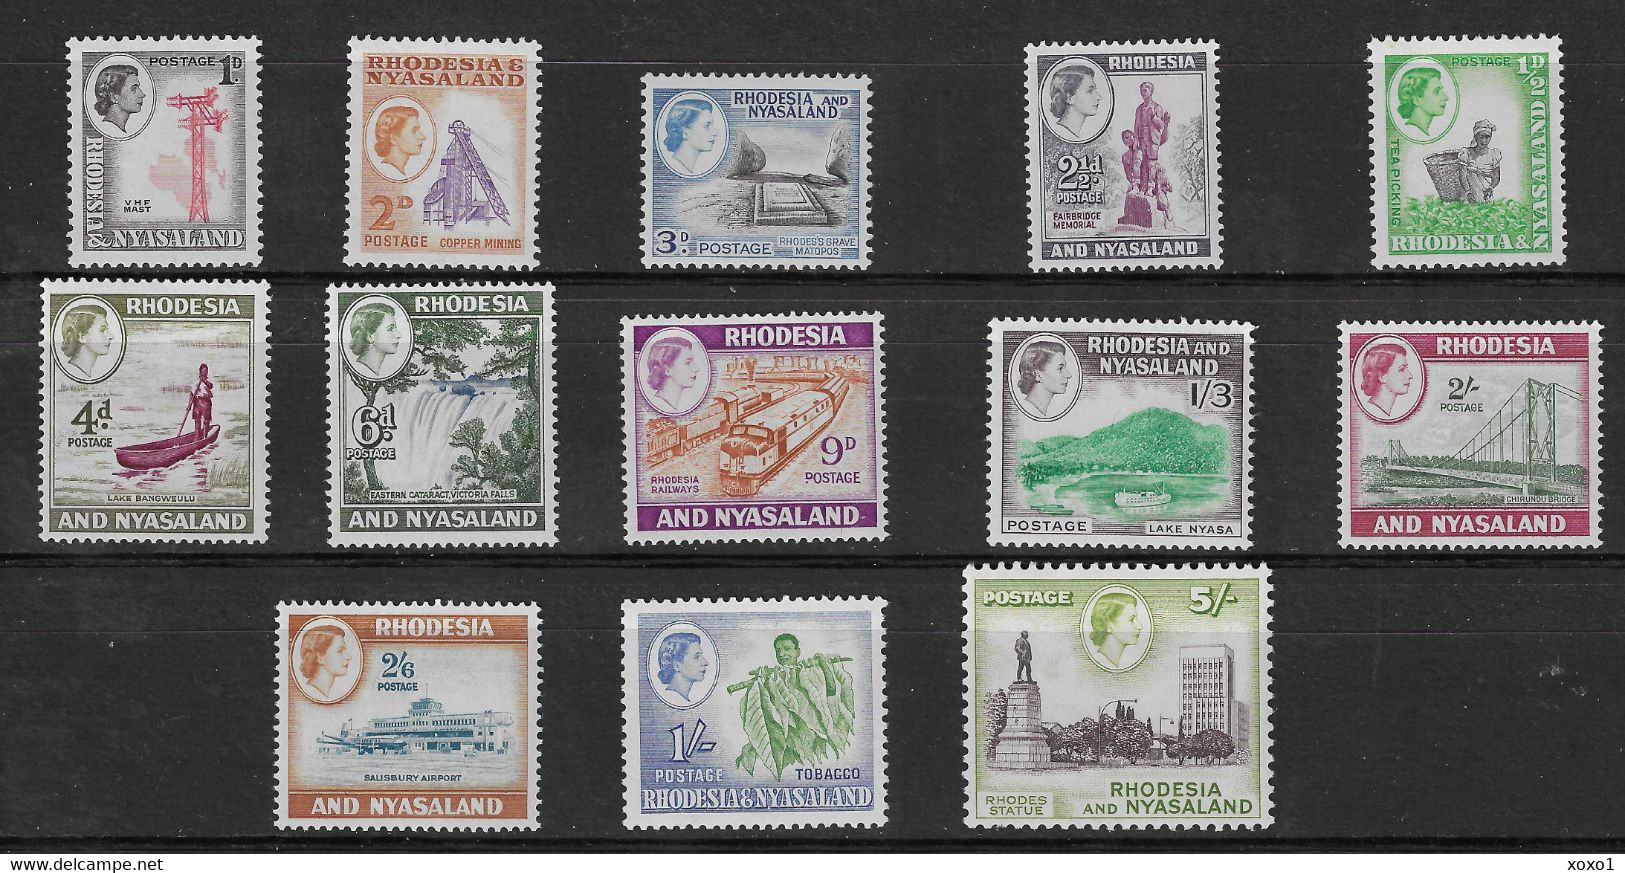 Rhodesia & Nyasaland 1959 MiNr. 19 - 31 Rhodesien Und Nyassaland 13v  MNH**  50,00 € - Rhodesia & Nyasaland (1954-1963)